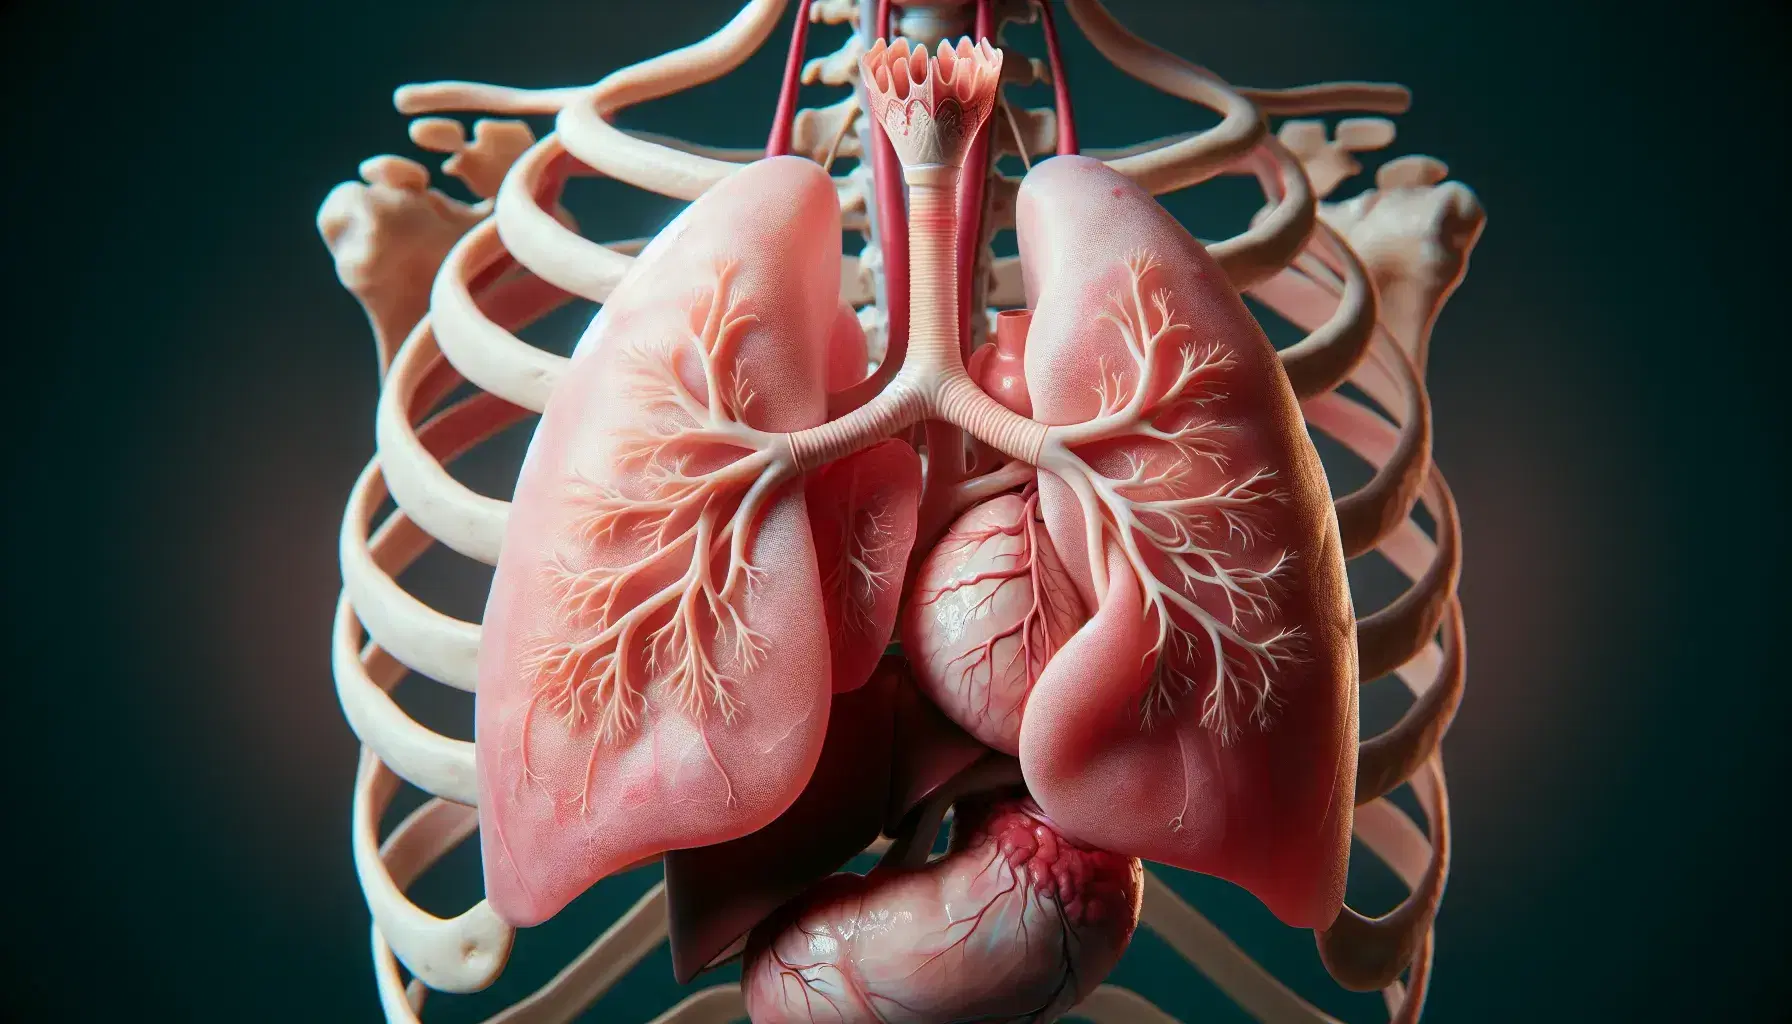 Pulmones humanos sanos de color rosa claro dentro de la cavidad torácica con costillas visibles, tráquea y corazón rojo oscuro al fondo.